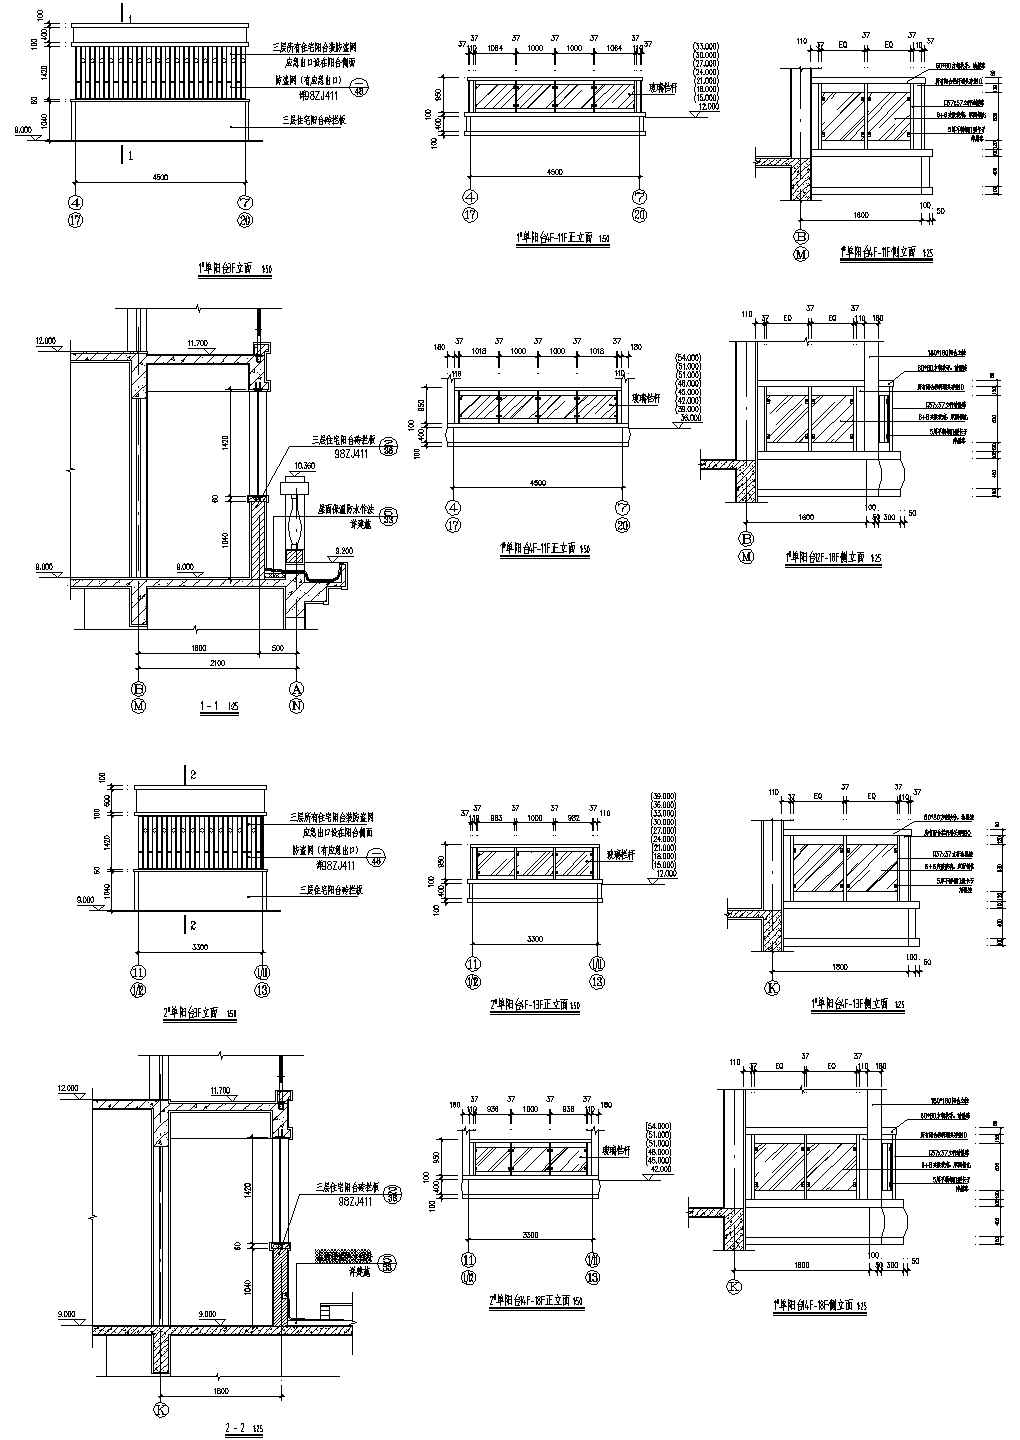 高层建筑施工图-双联型阳台详图3CAD施工图设计